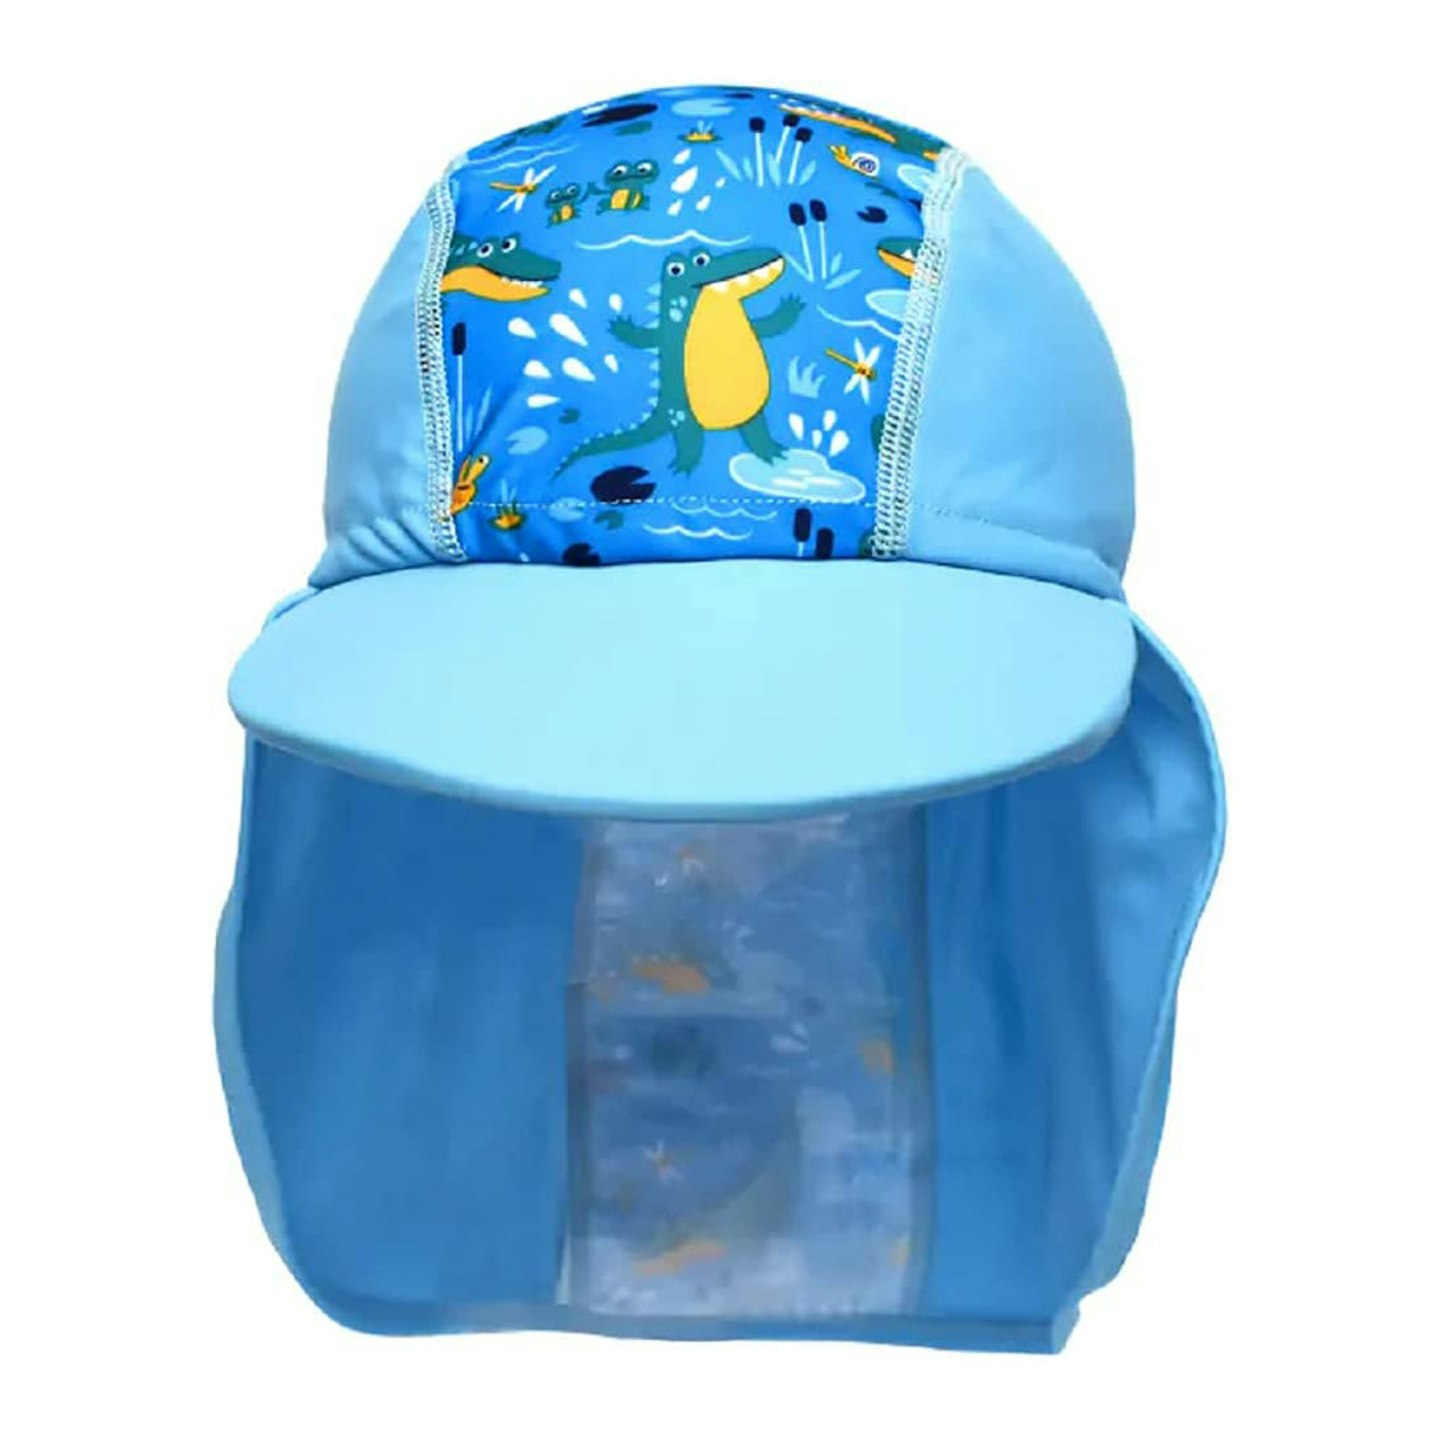 Splash About Baby Kids Legionnaire Sun Hat